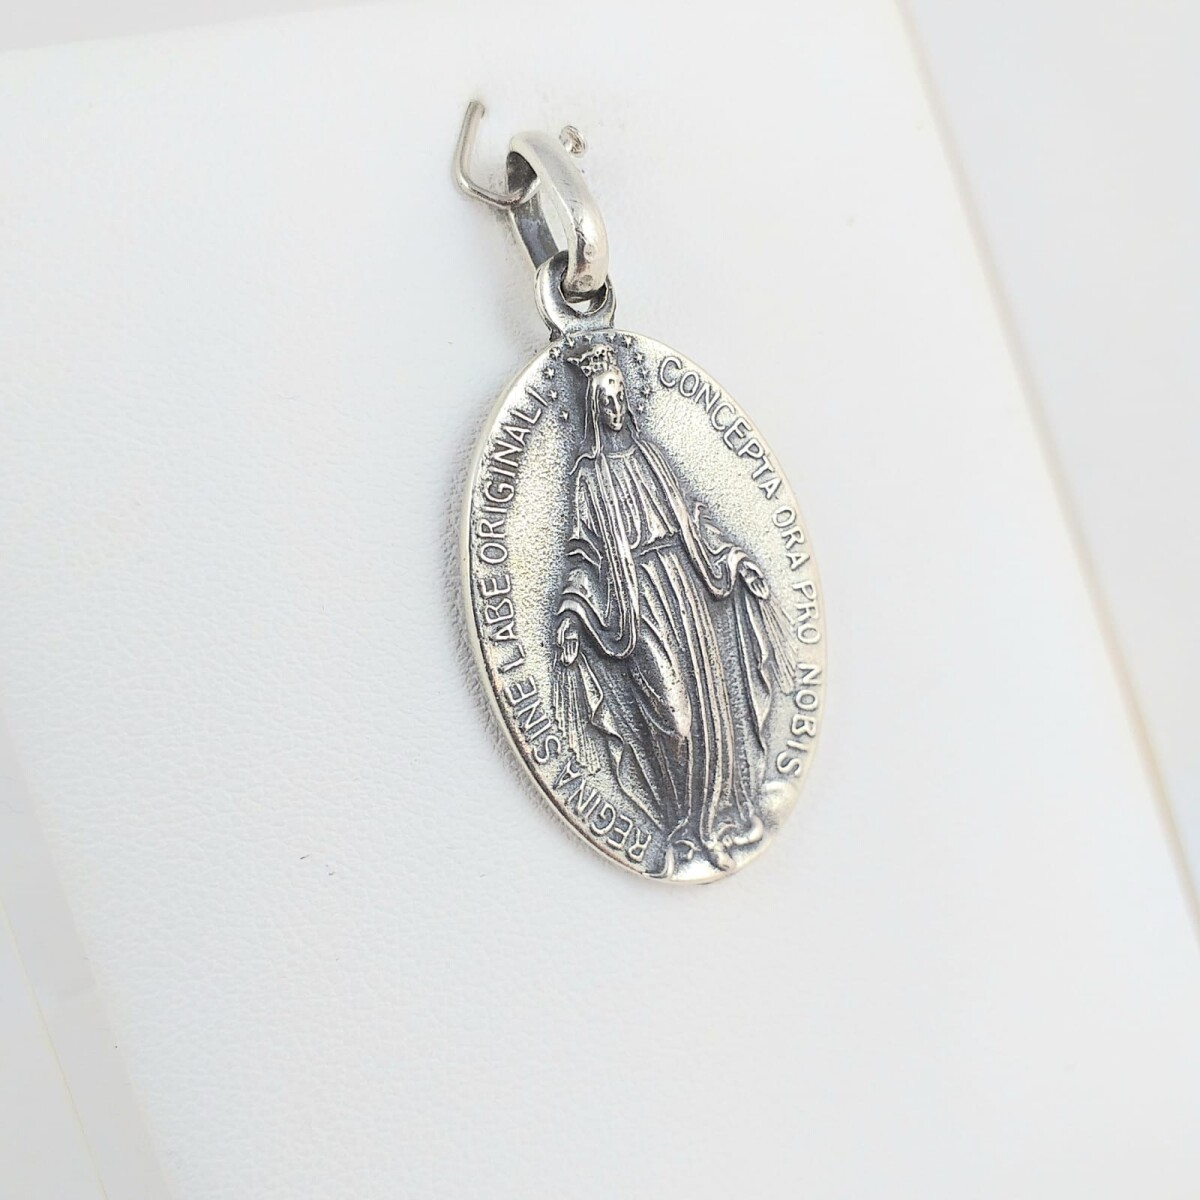 Medalla religiosa de plata 925, Virgen Milagrosa, medidas 30mm*21mm. 